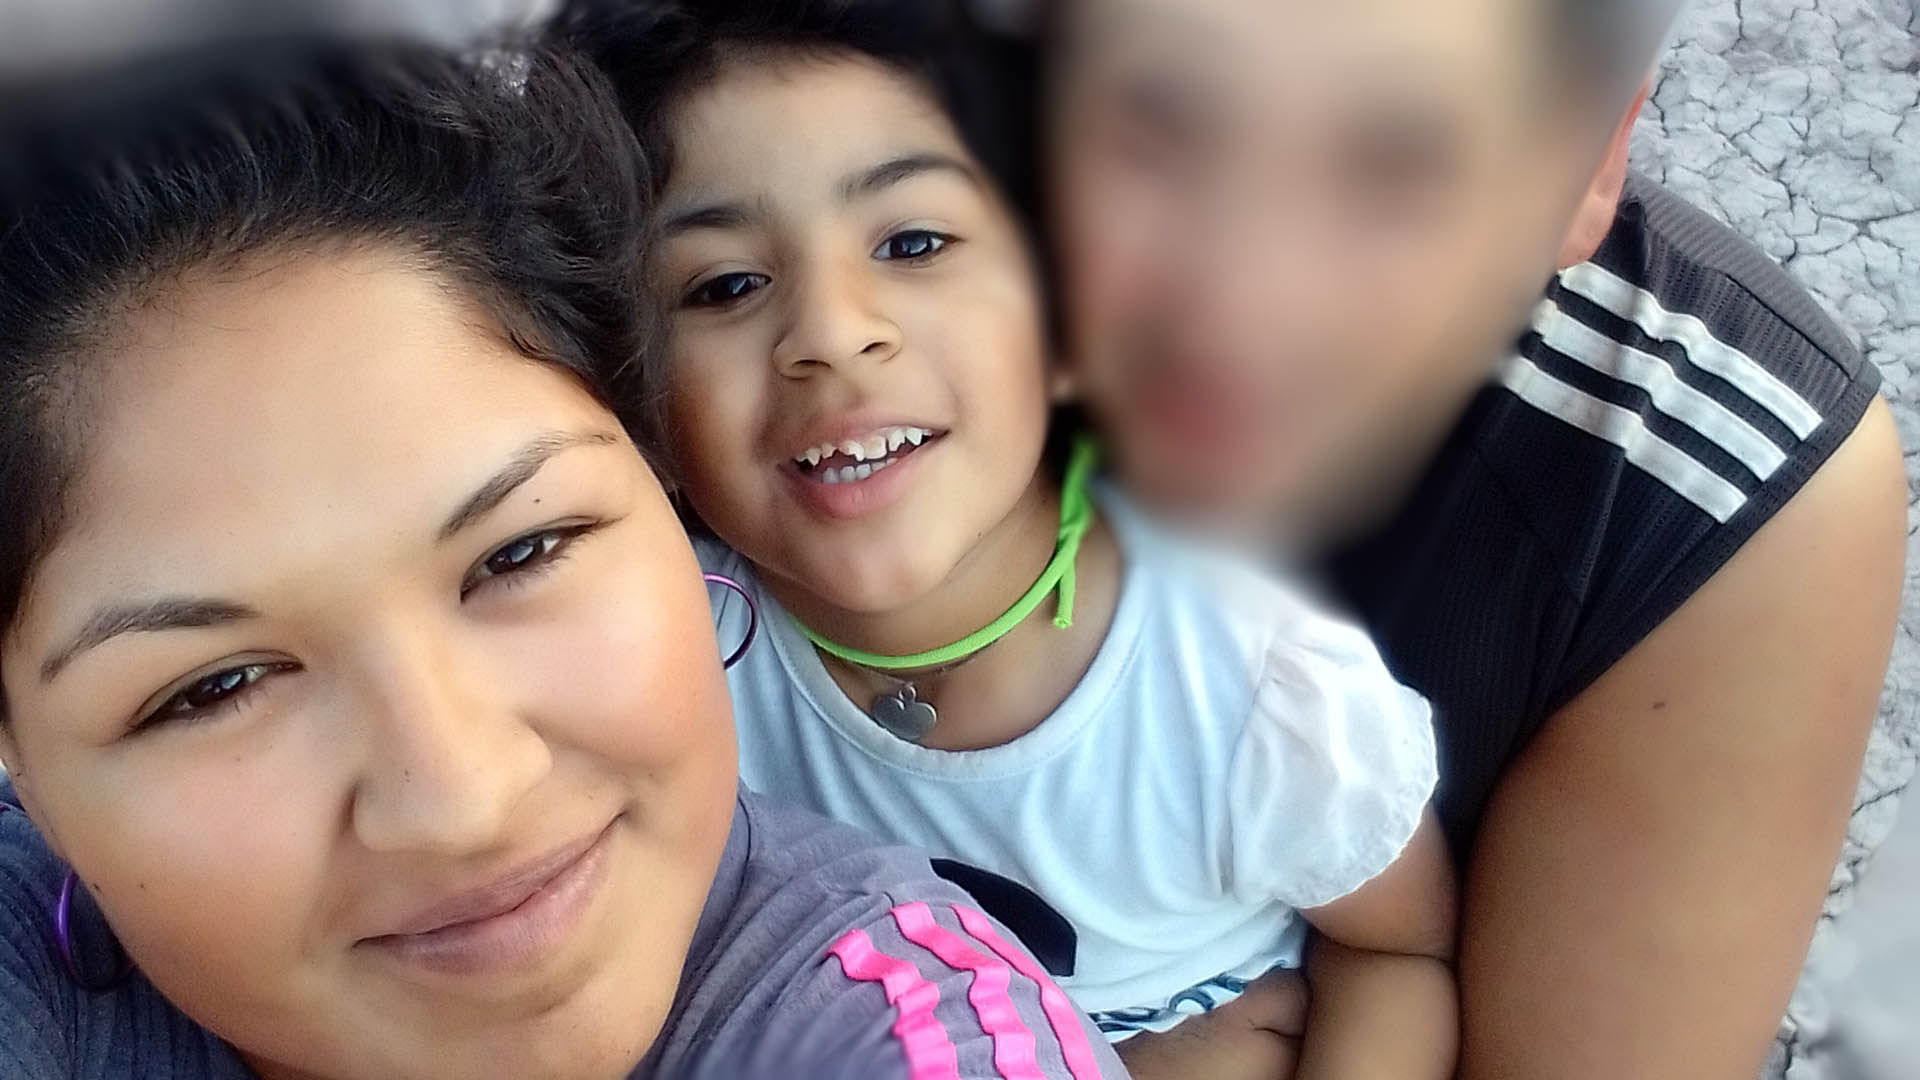 Horror en Mendoza: hallan muertas a una mujer y a su hija e investigan un homicidio seguido de suicidio